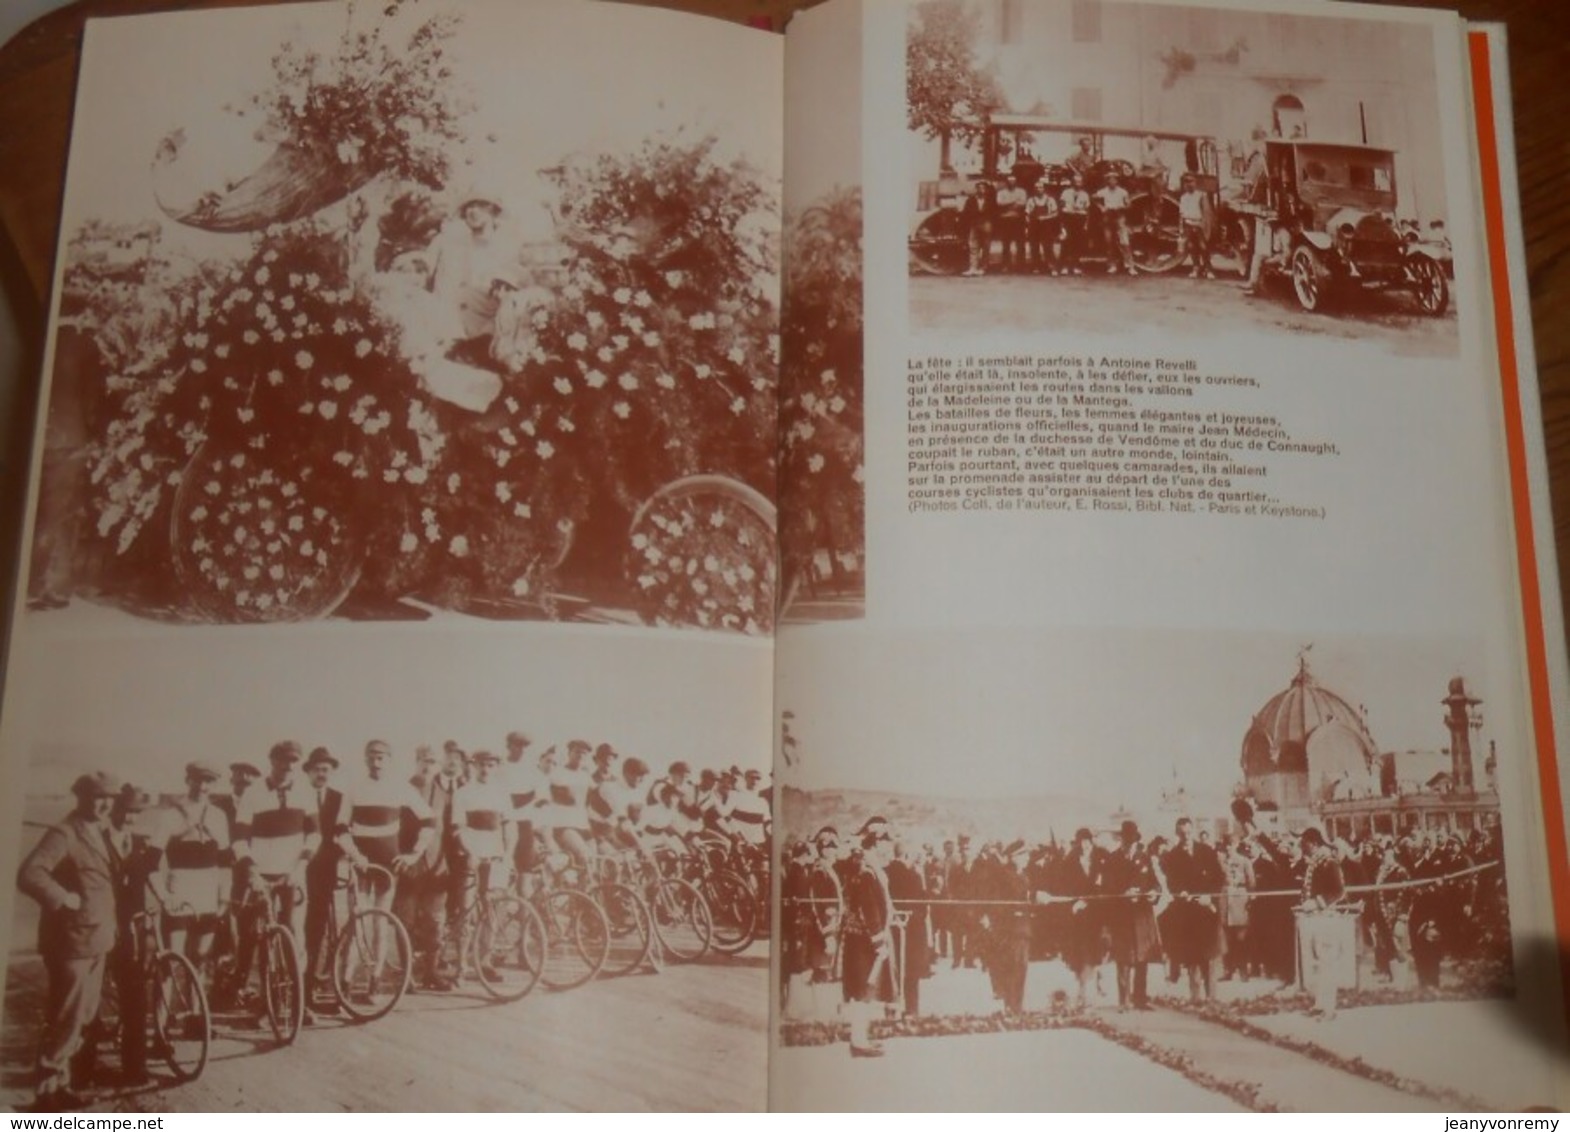 La Baie des Anges. Le Palais des Fêtes. La Promenade des anglais. Max Gallo. En 3 volumes. 1975-1976.